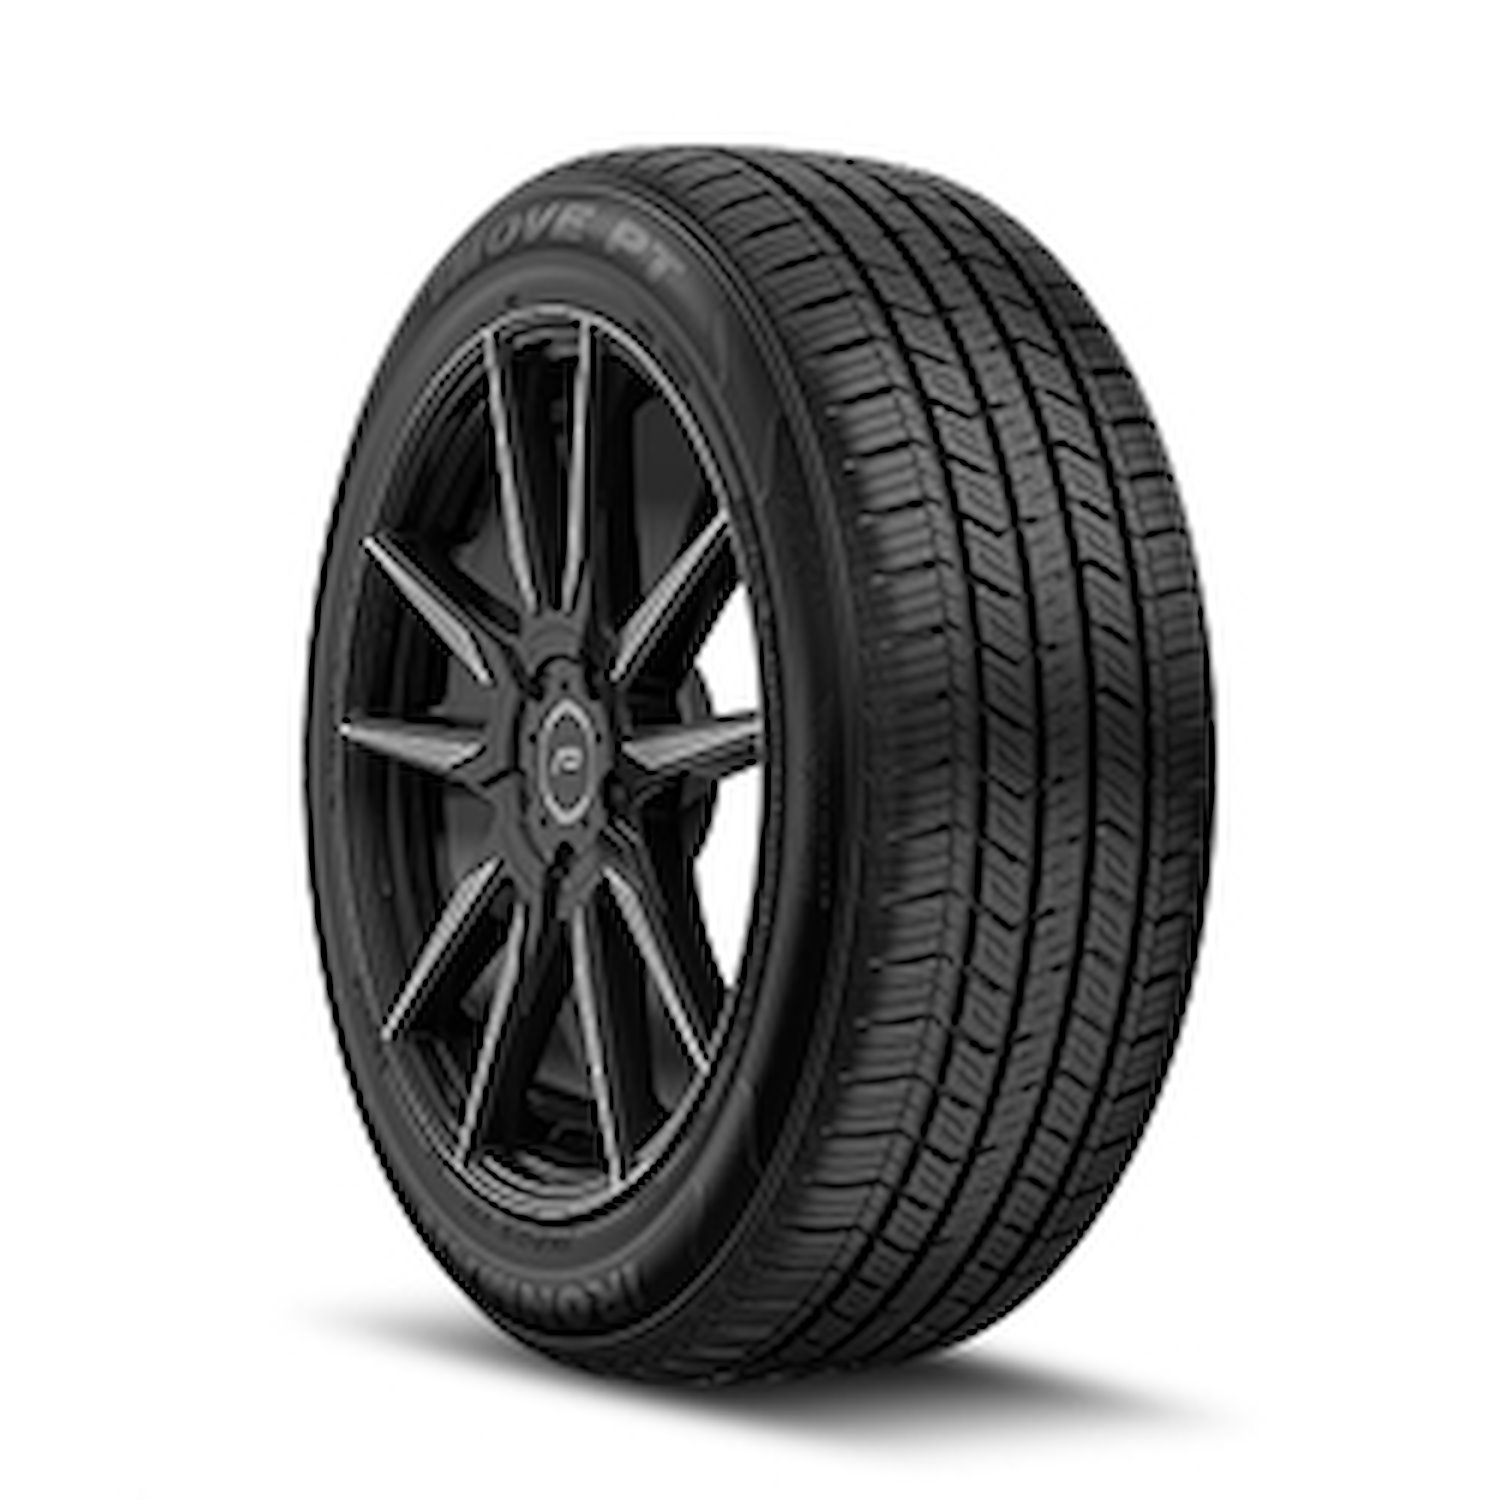 98475 iMOVE PT Tire, 235/60R17, 102H